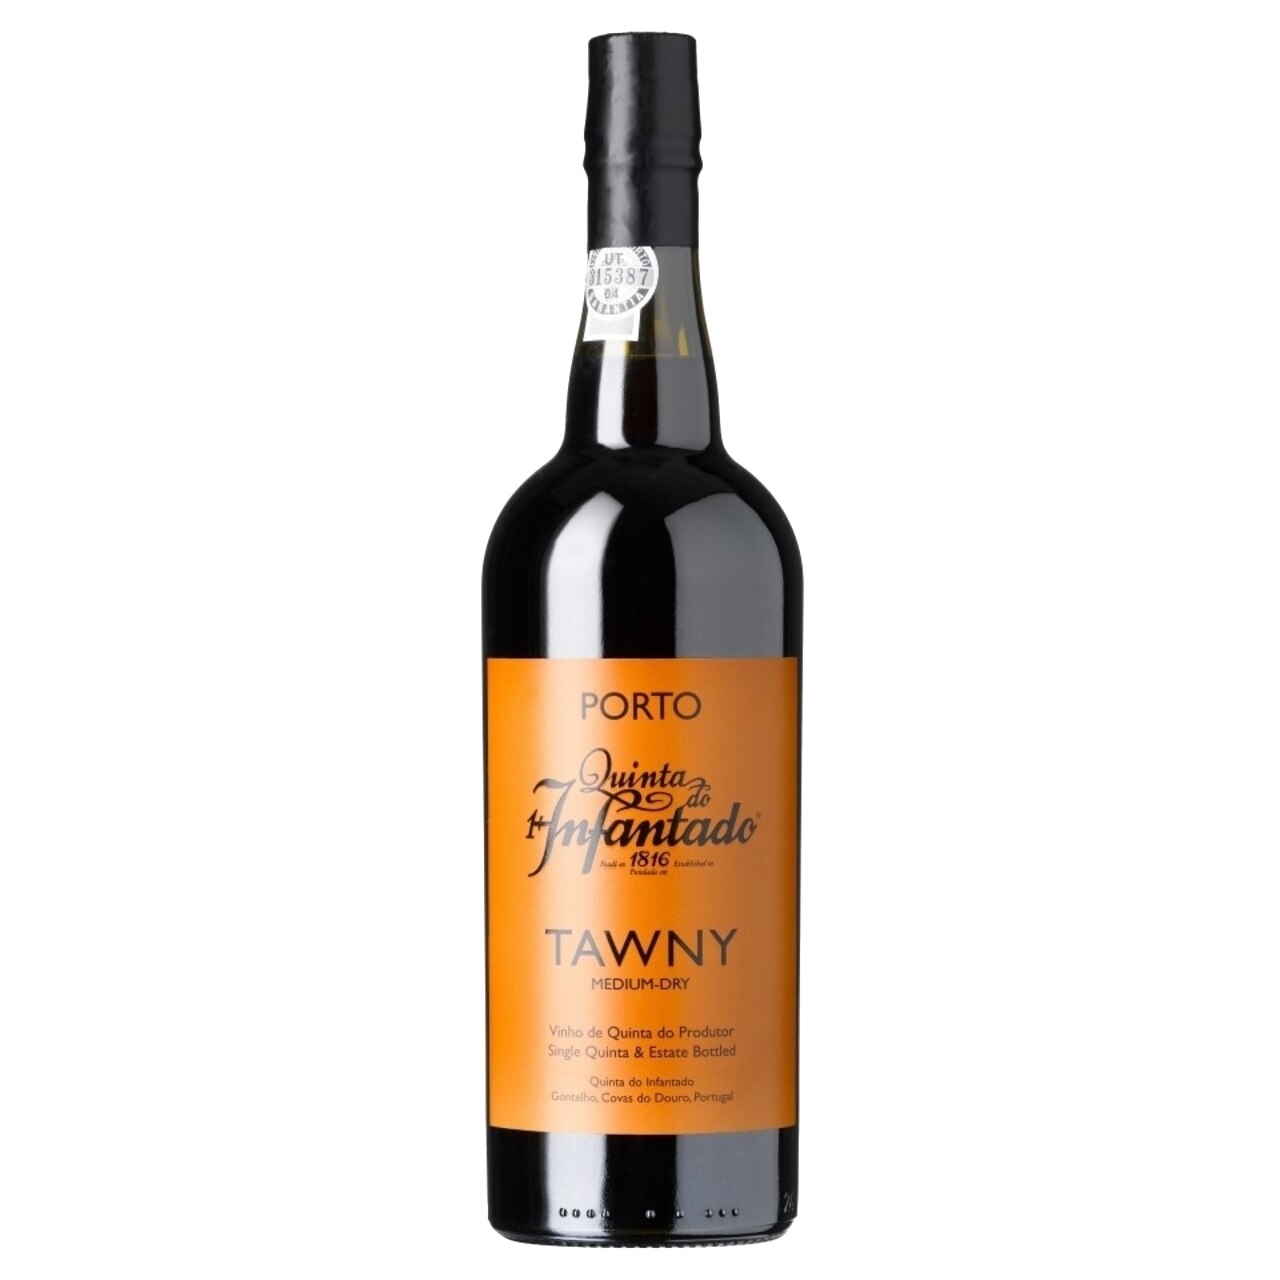 Vin Porto Quinta Tawny alc. 19,5% 0.75l vol